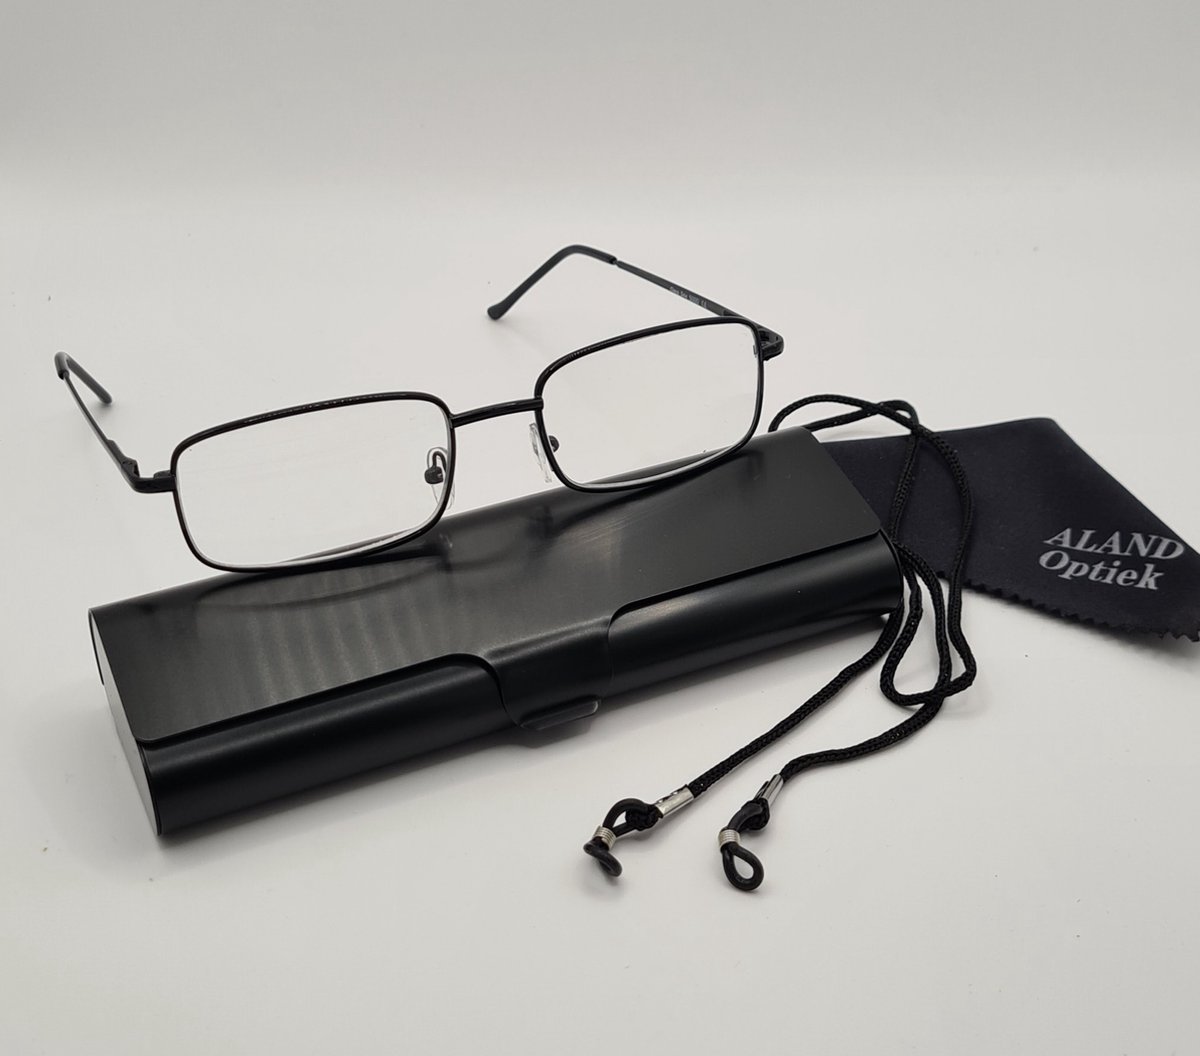 Unisex leesbril +2,5 met brillenkoker + koord + microvezeldoekje / class one 5000 / zwart / +2.5 lunettes de lecture avec étui pratique, cordon et chiffon de nettoyage pour lentilles / Aland optiek